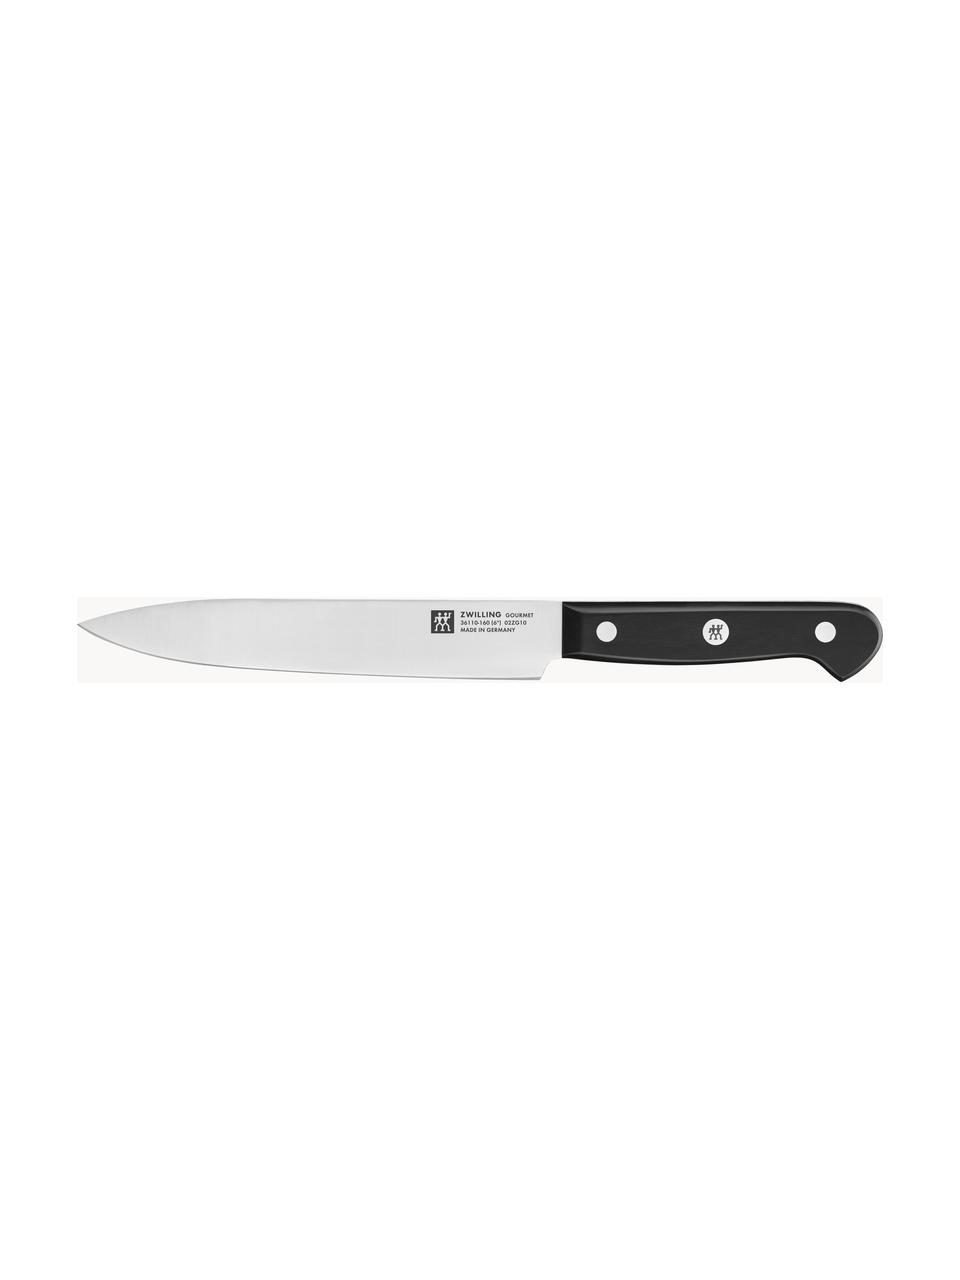 Selbstschärfender Messerblock Gourmet mit 5 Messern und 1 Schere, Messer: Edelstahl, Griff: Kunststoff, Schwarz, Set mit verschiedenen Größen